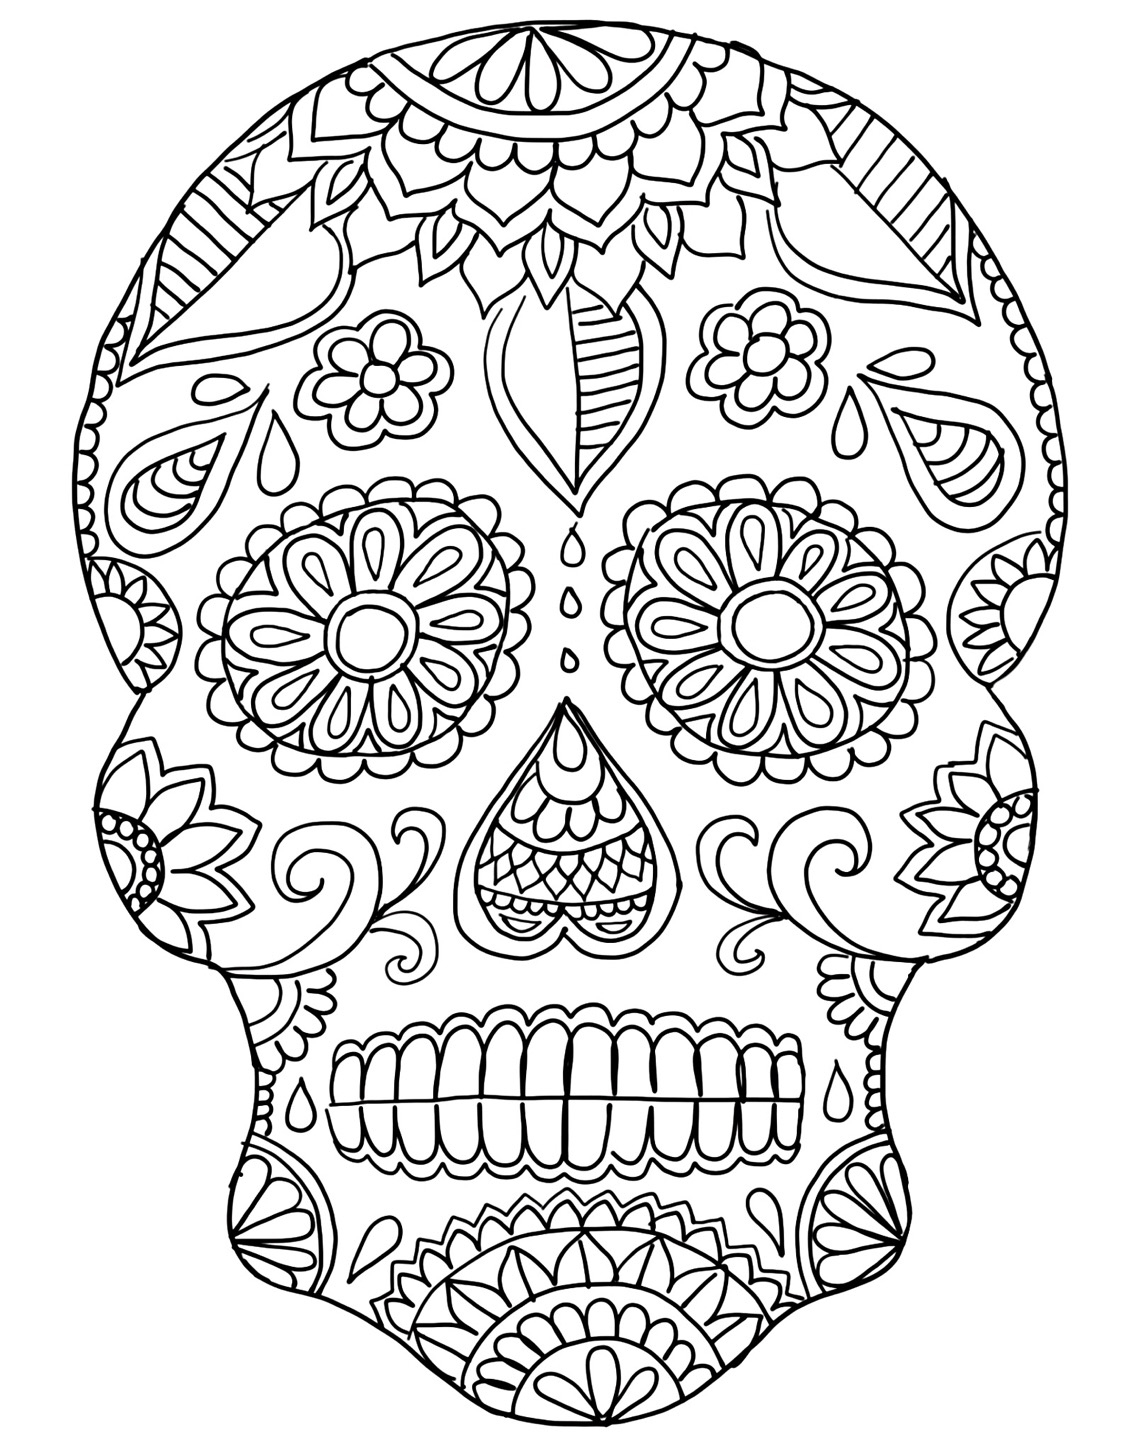 Día De Los Muertos - Day Of The Dead Sugar Skull Craft Ideas | Ooly - Free Printable Sugar Skull Day Of The Dead Mask